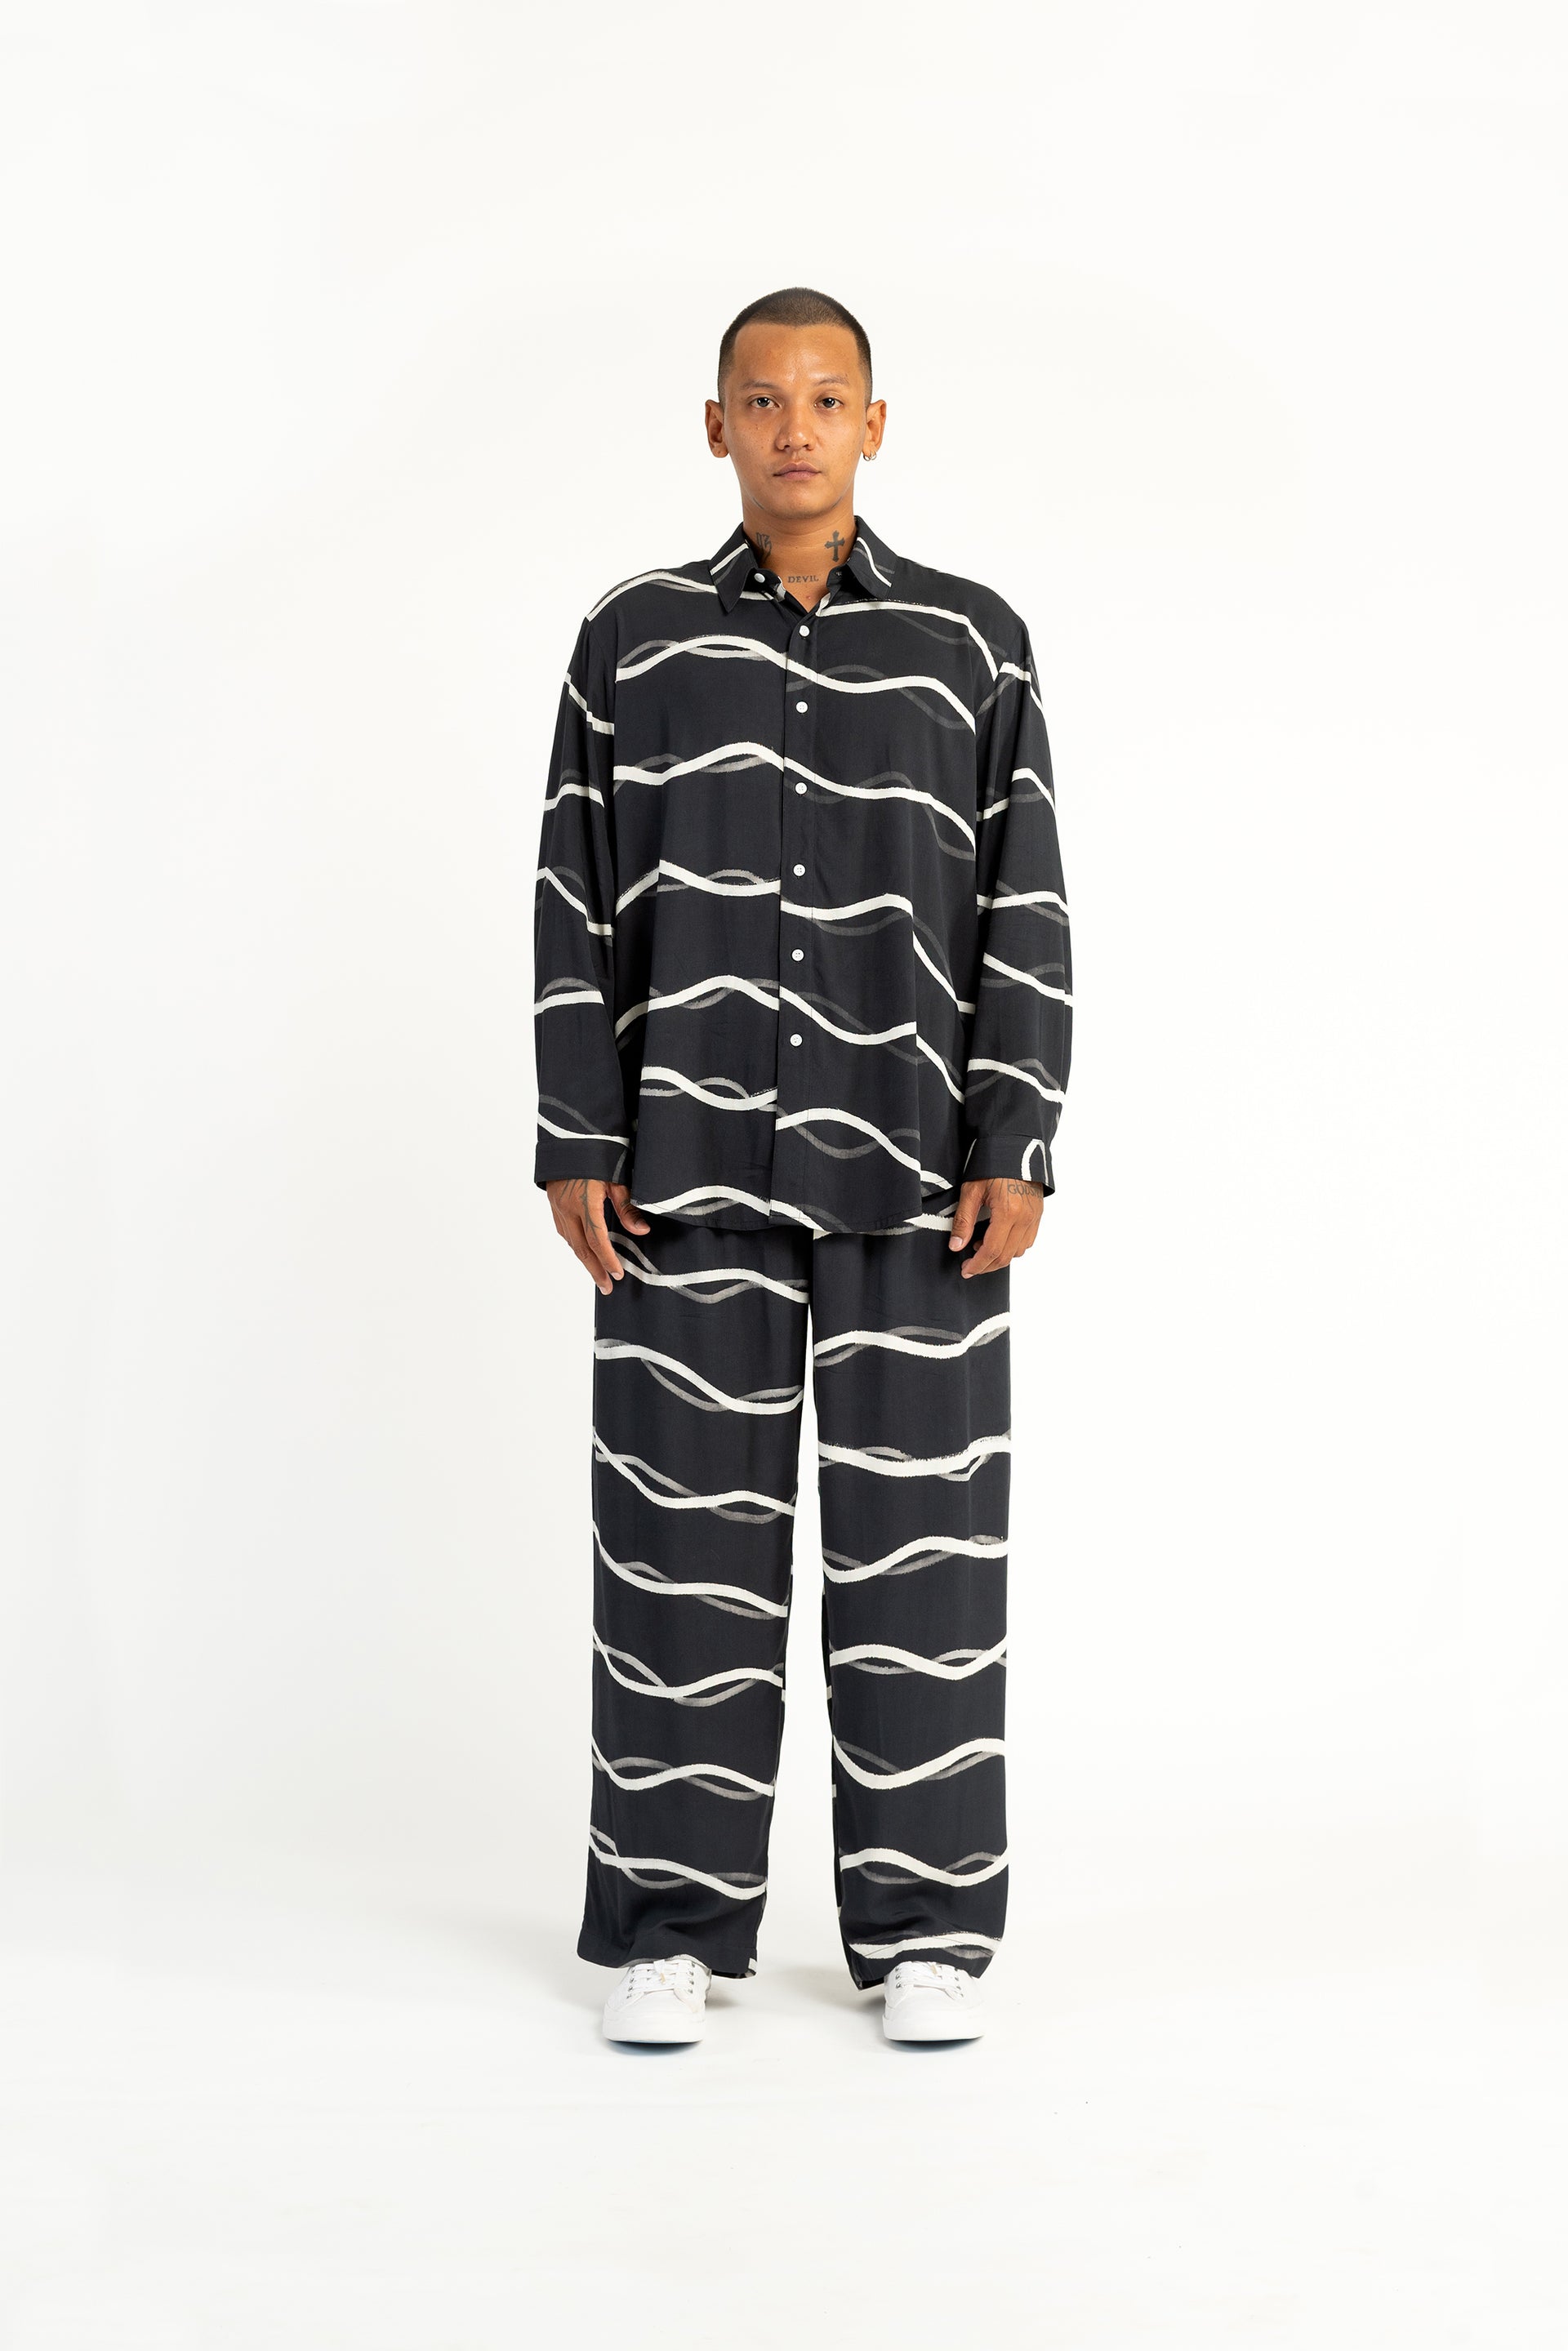 Shoreline Winter Pyjamas